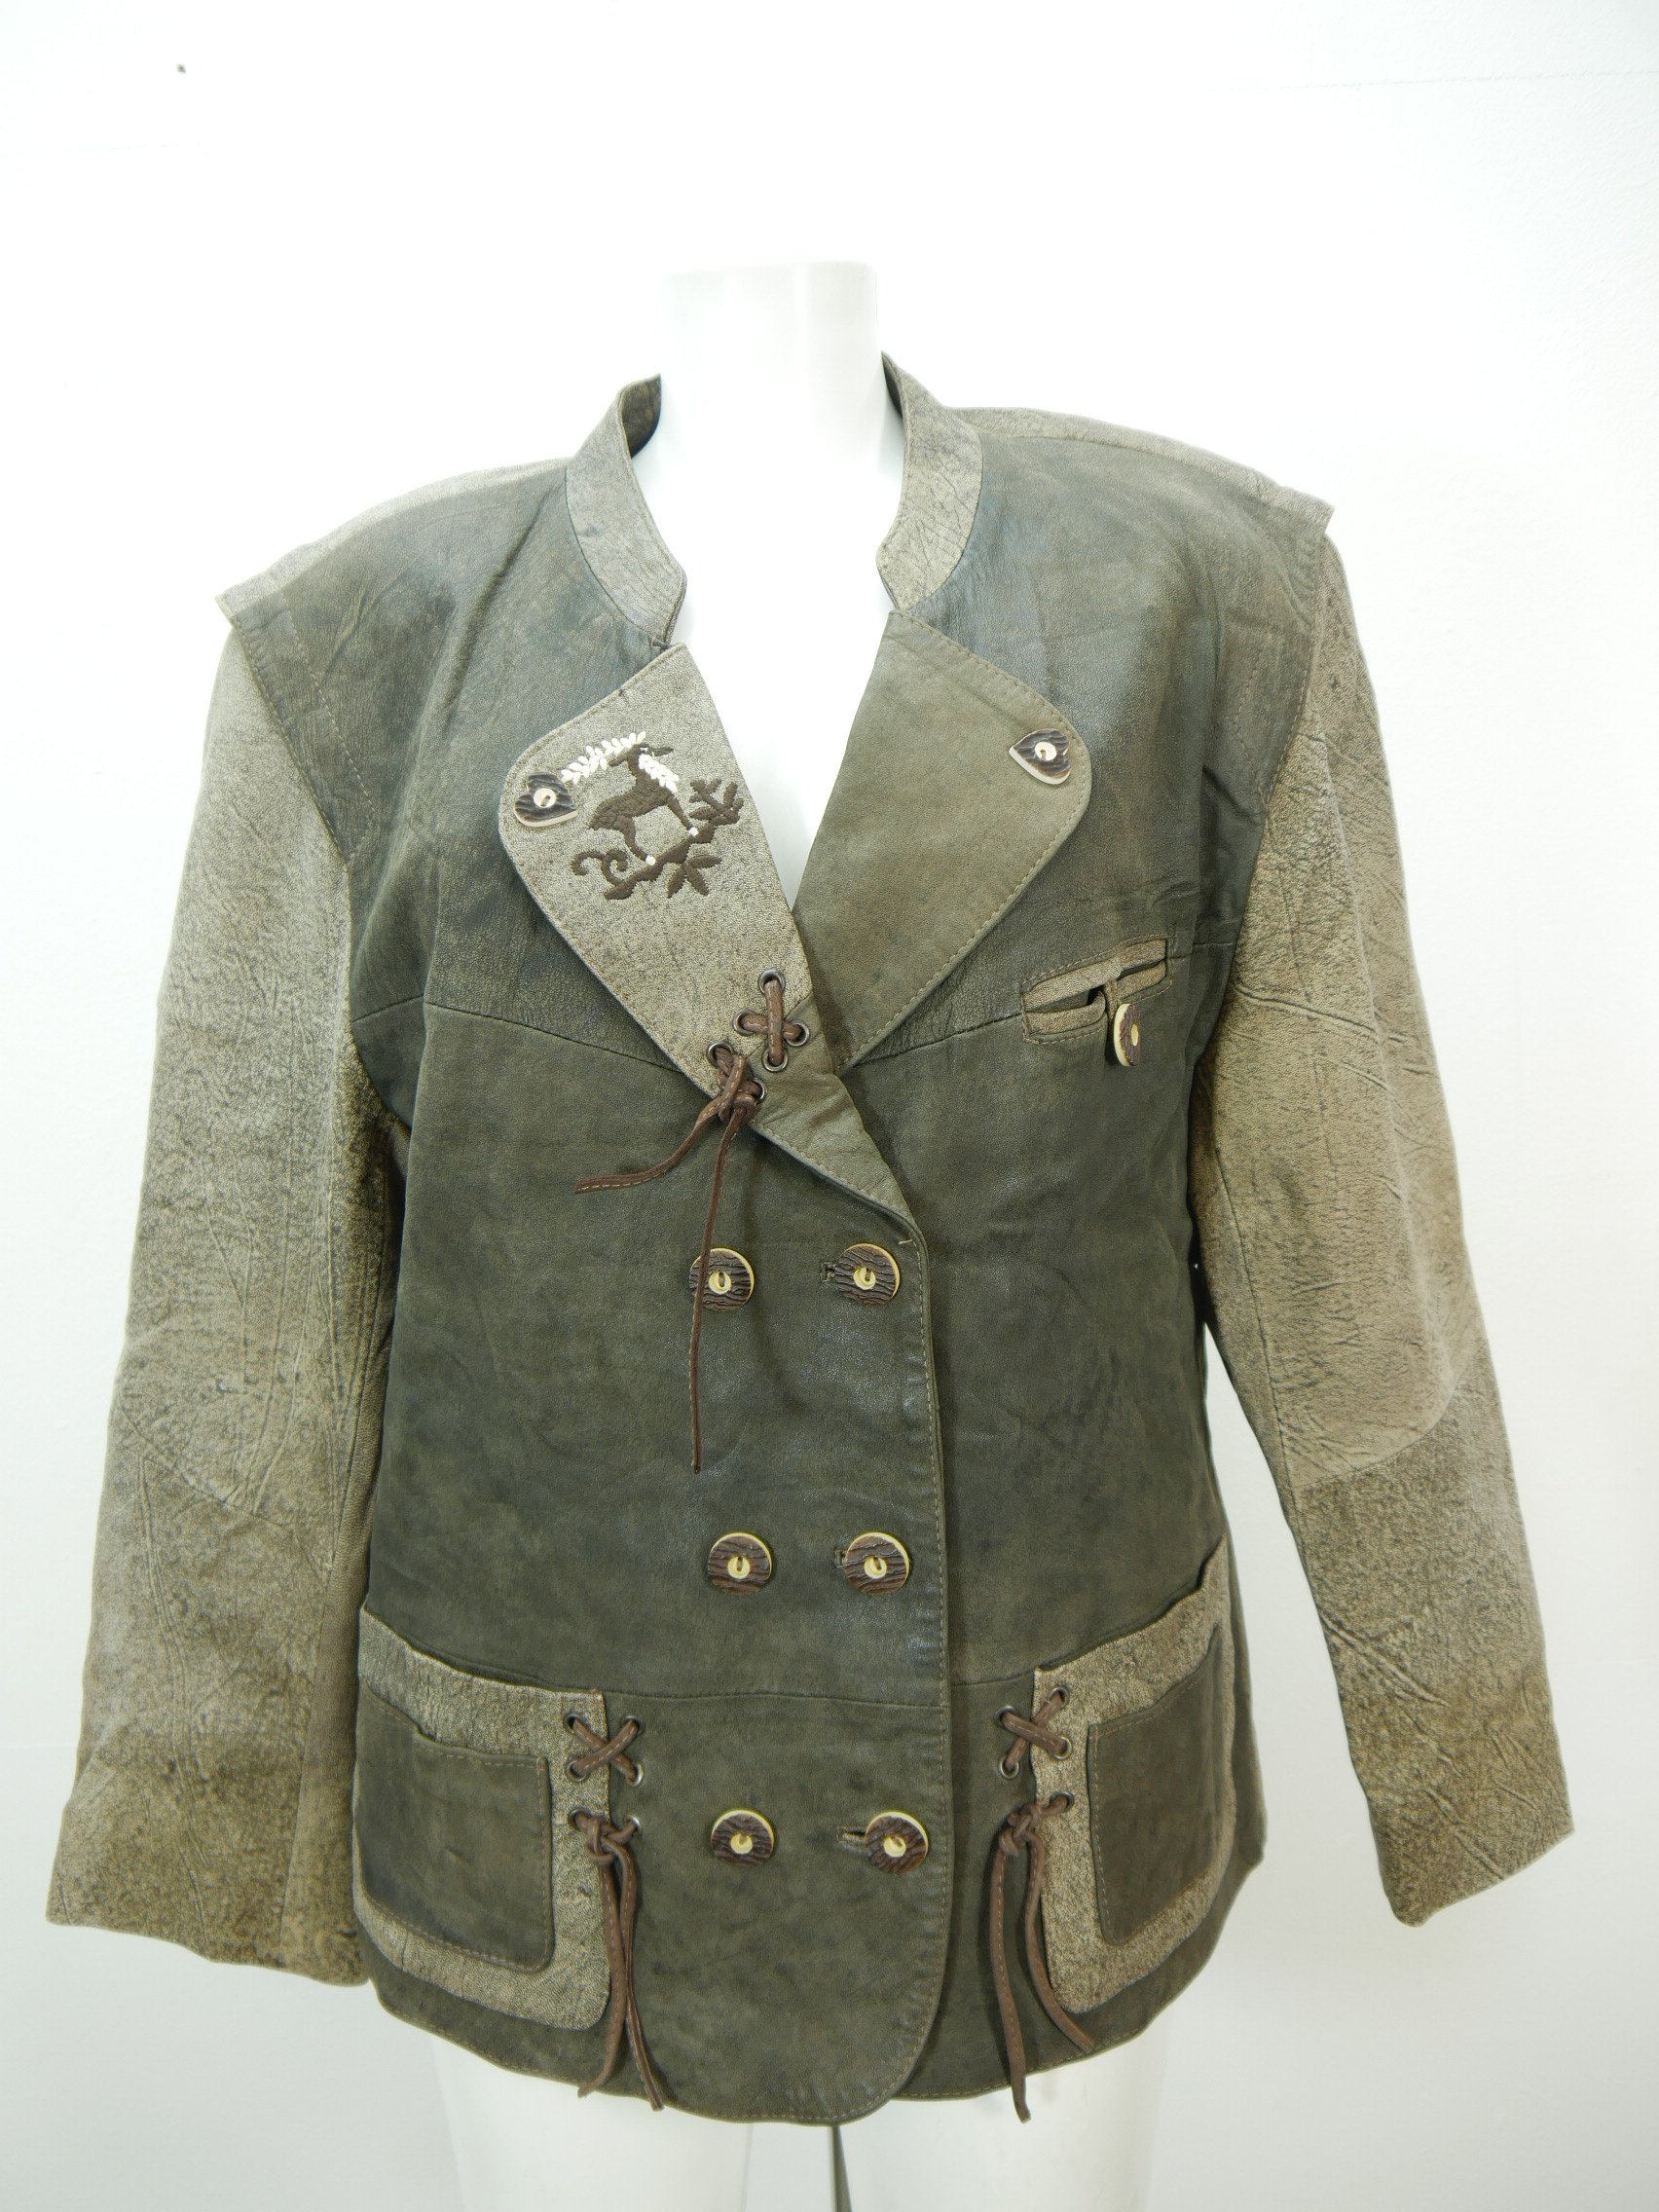 Forster selten getragen Jacke Antikleder-Look Lederjacke grau mit Besatz Gr.44